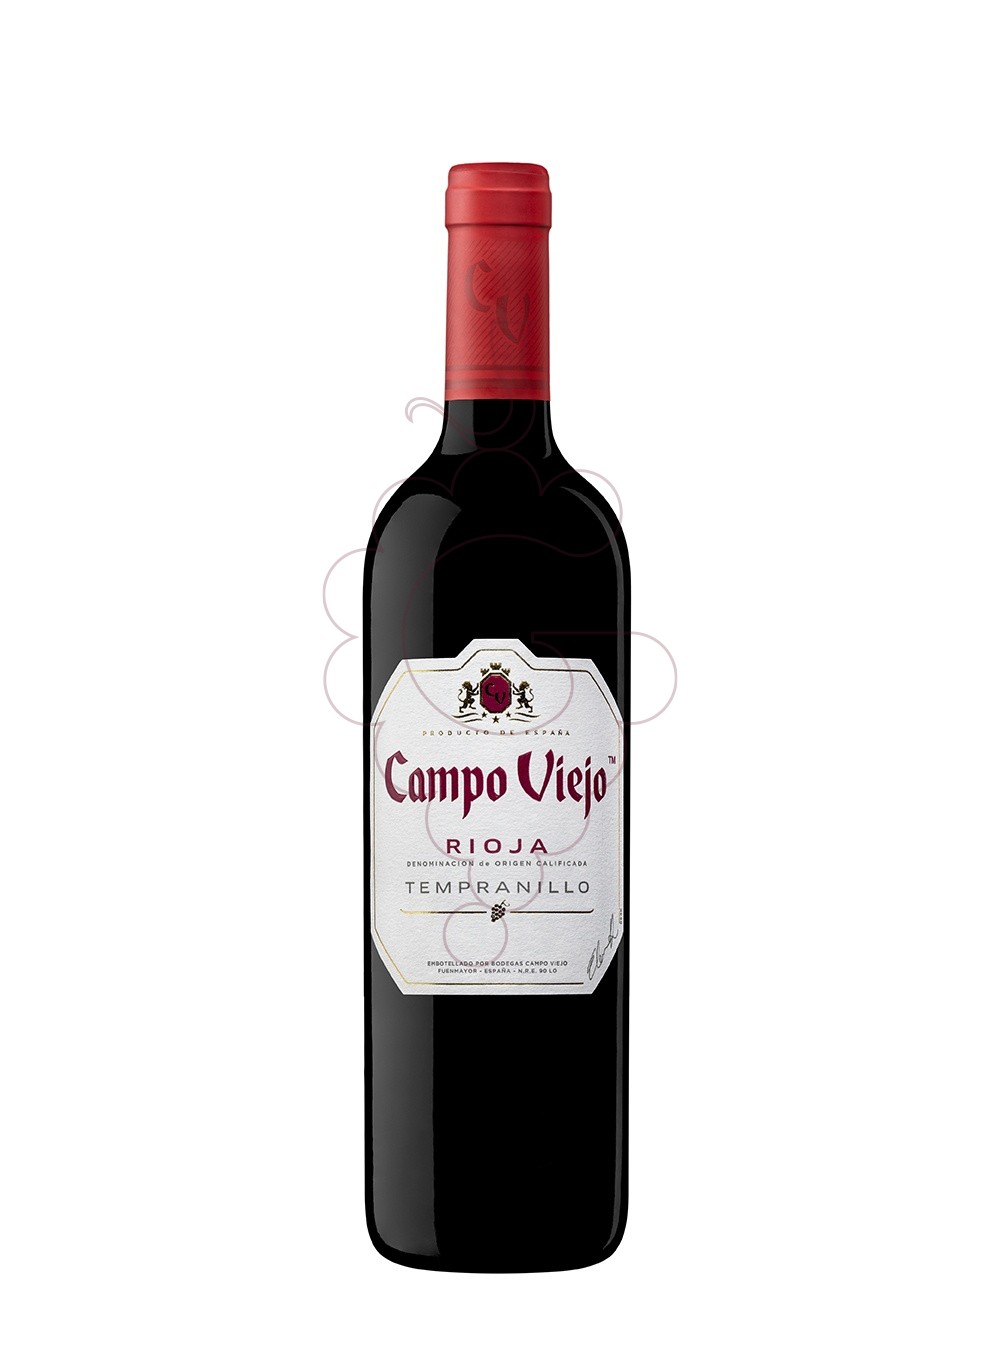 Foto Campo Viejo Negre Tempranillo vino tinto